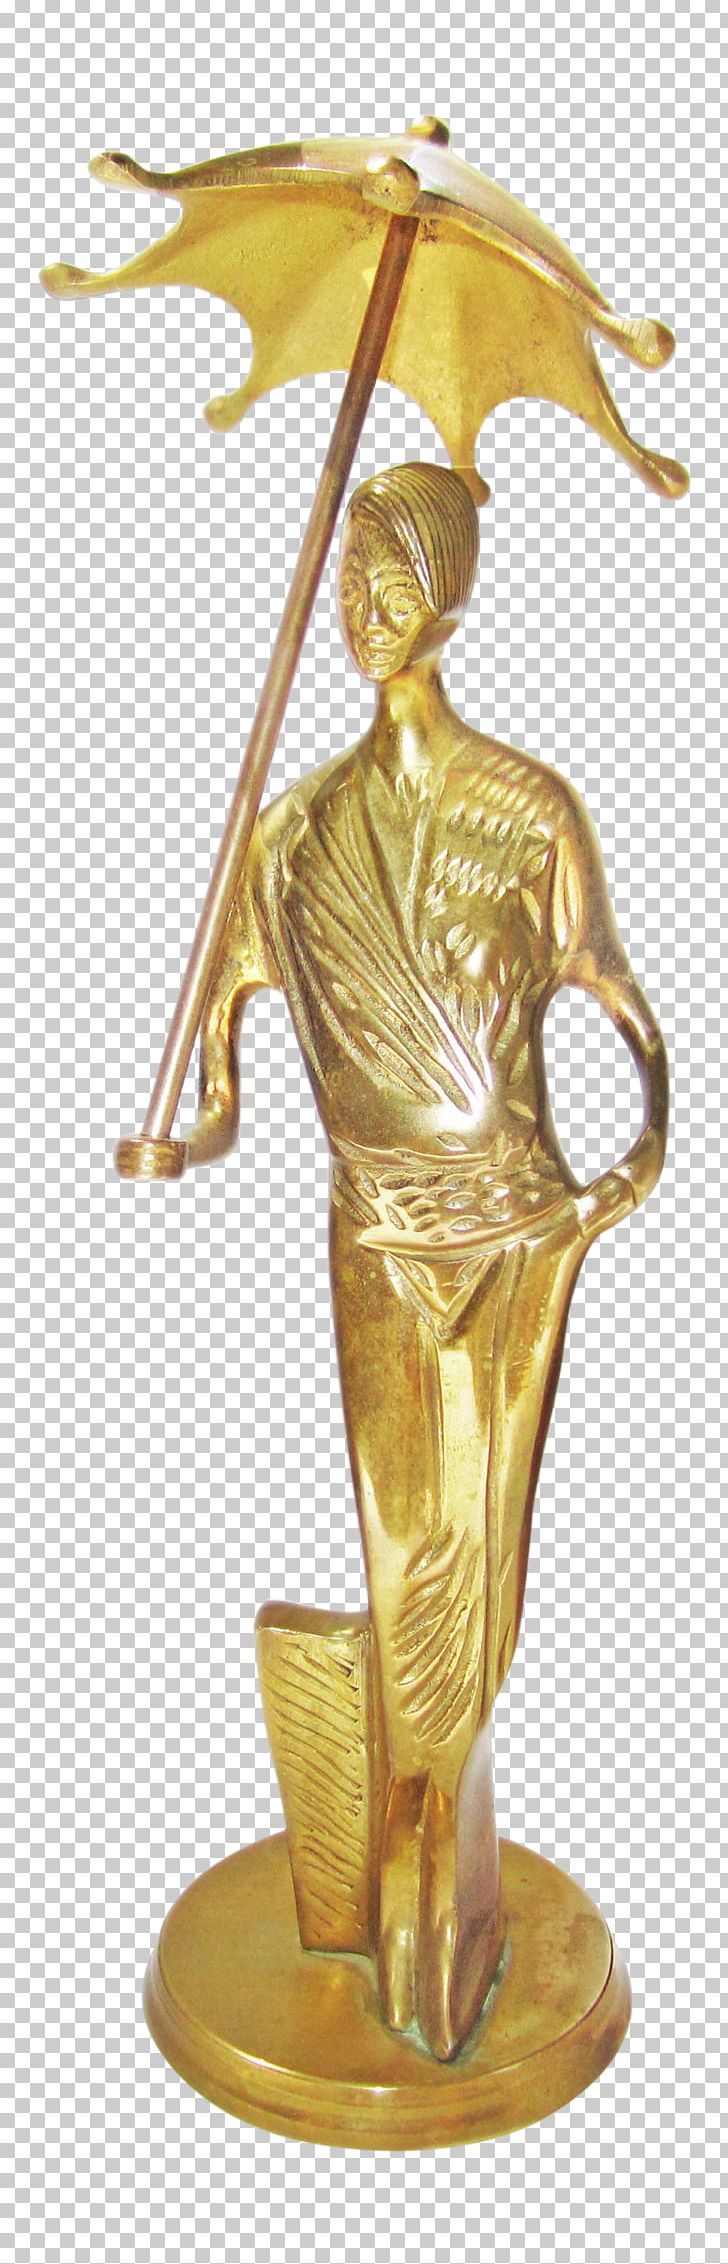 Bronze Sculpture Brass Classical Sculpture PNG, Clipart, 01504, Art Deco, Artifact, Brass, Bronze Free PNG Download